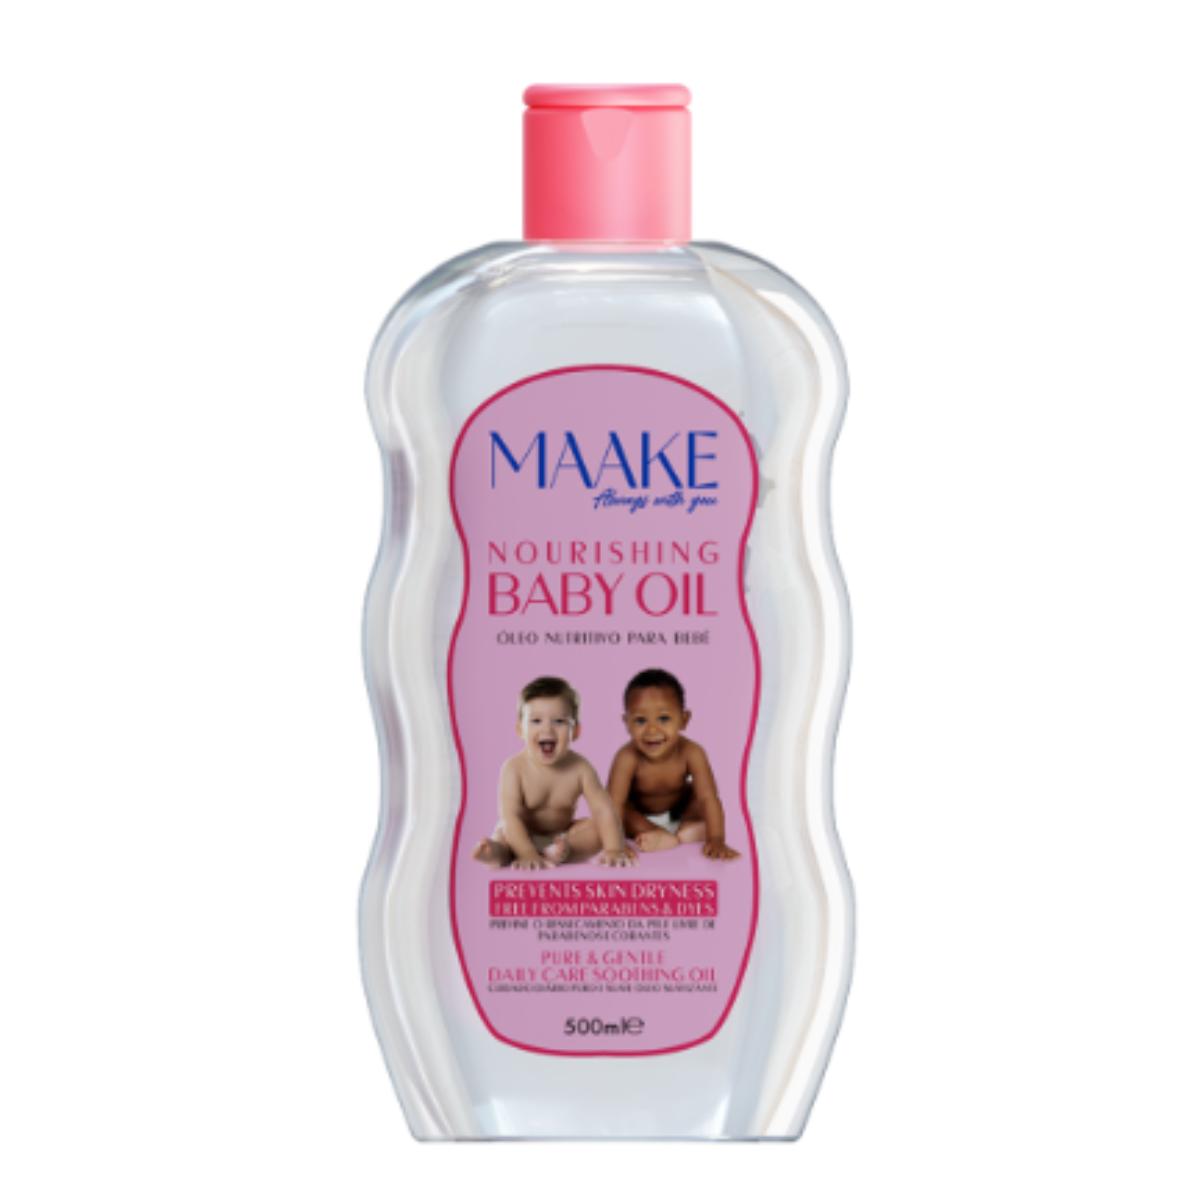 MAAKE Nourishing Baby Oil 500ML